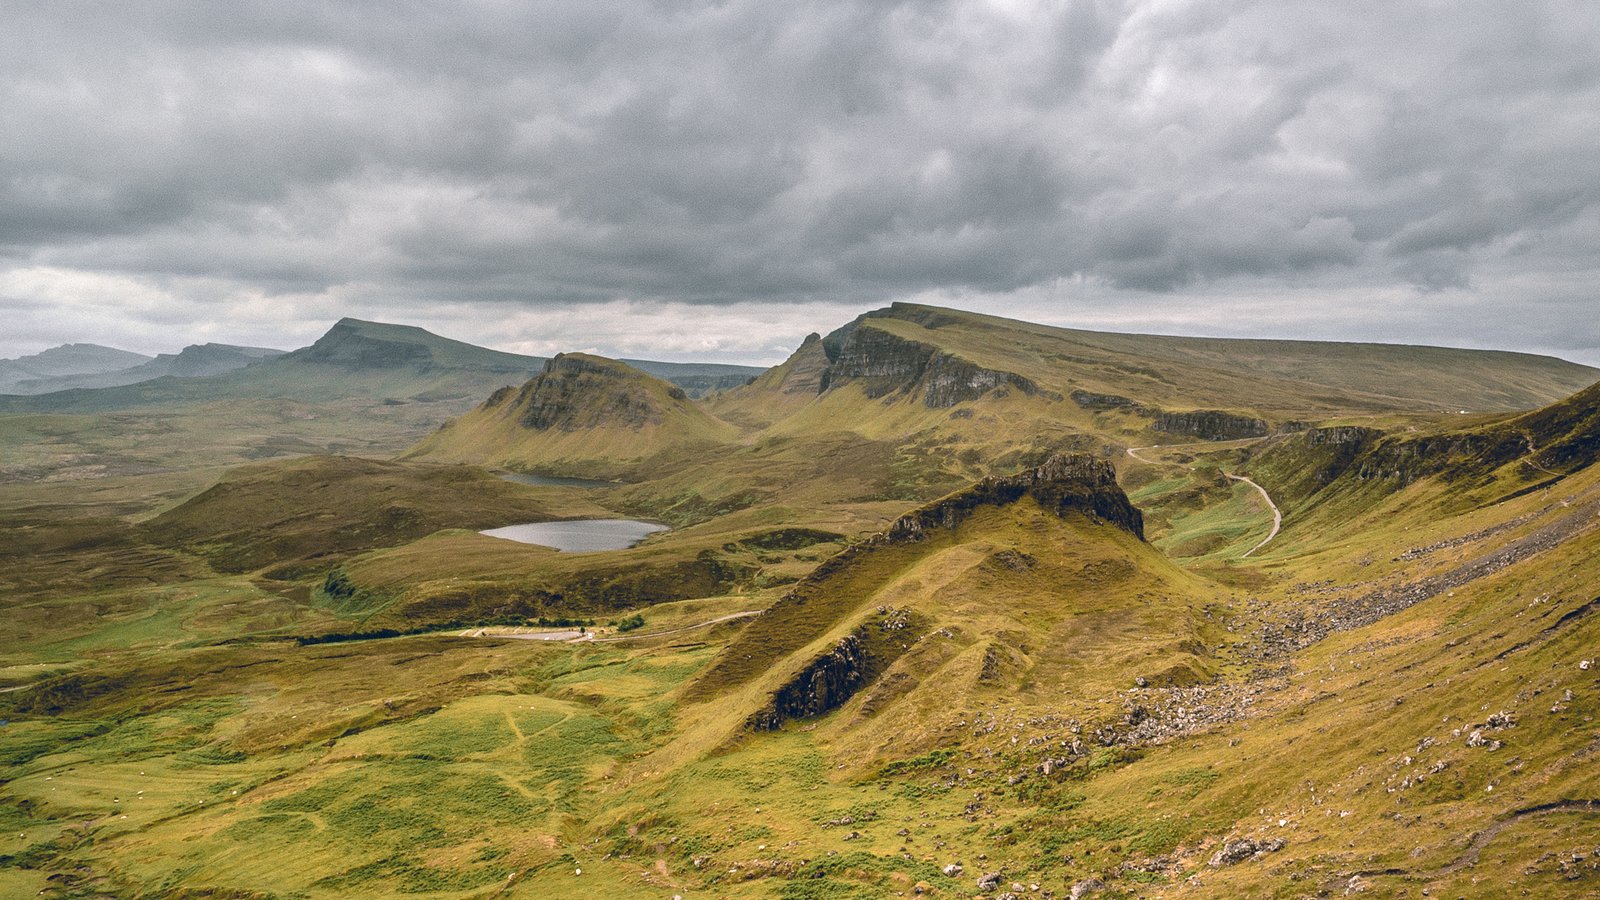 Scotland – Highlands in 1 week